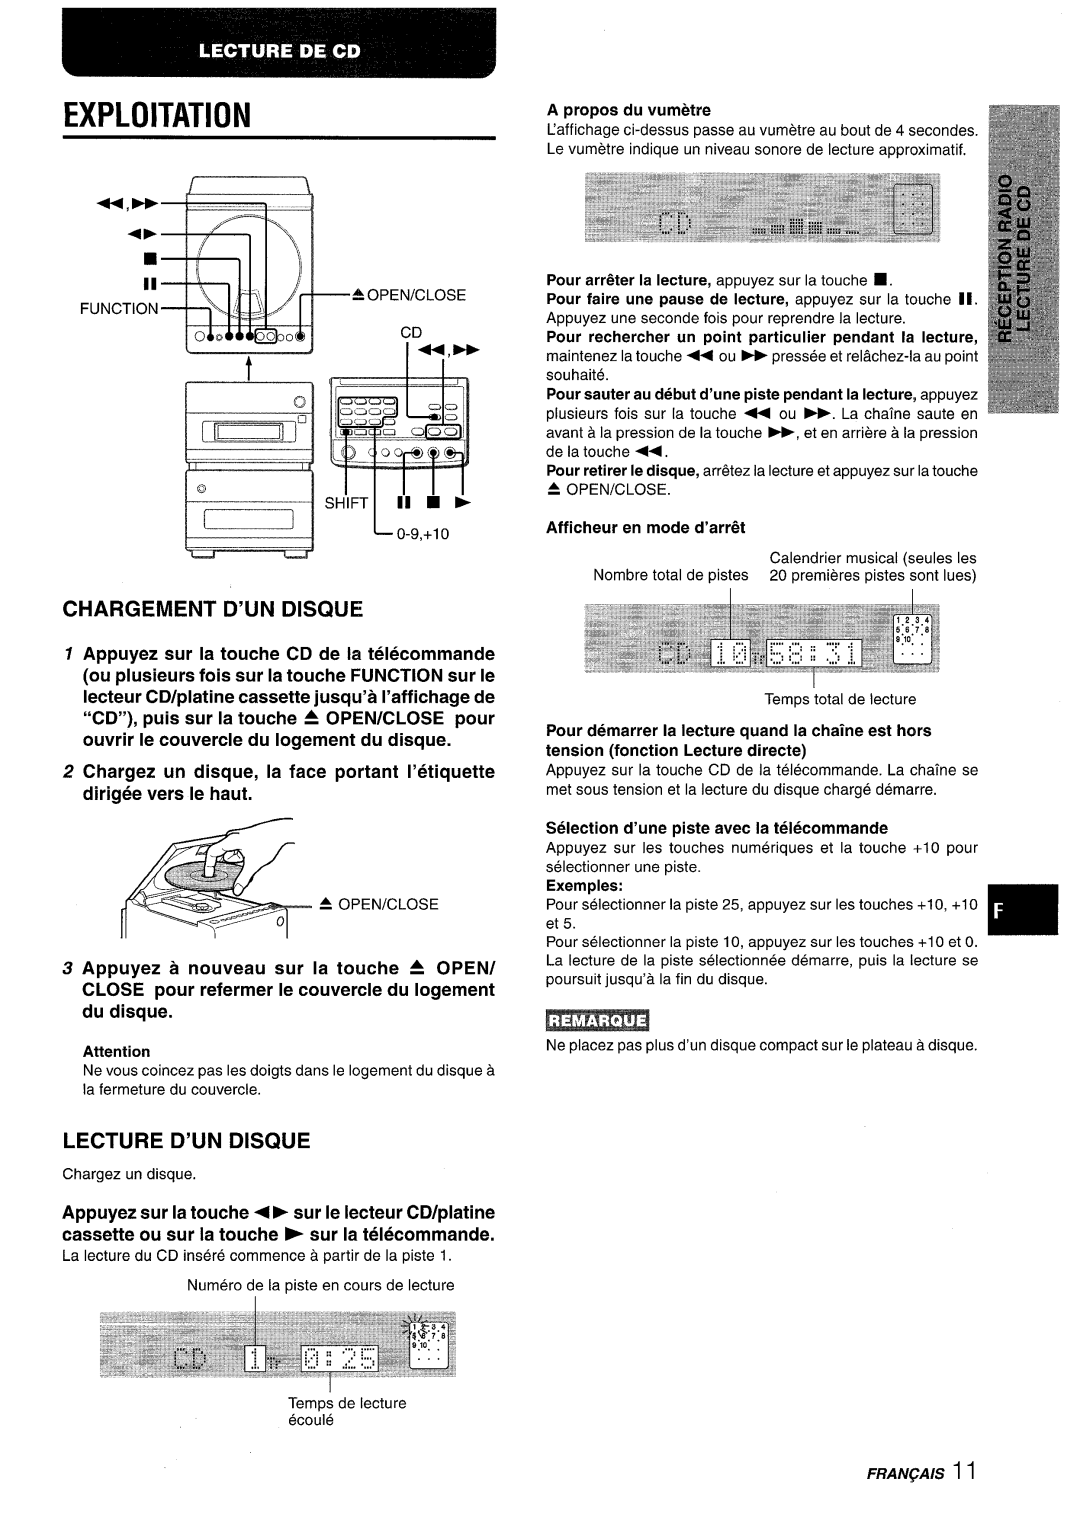 Aiwa XR-M88 manual Exploitation, Chargement D’Un Disque, Lecture D’Un Disque 